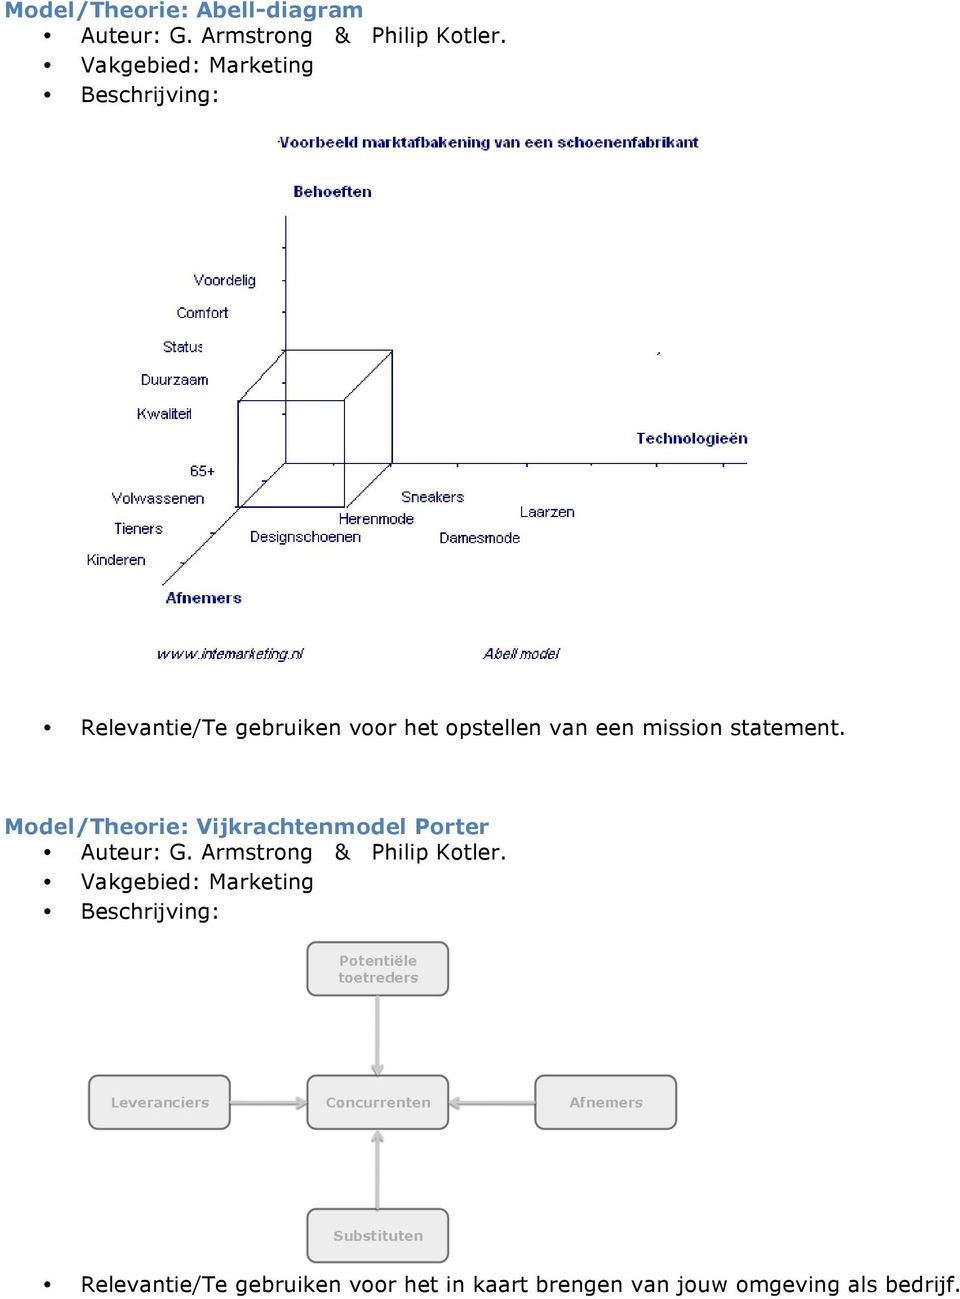 Model/Theorie: Vijkrachtenmodel Porter Relevantie/Te